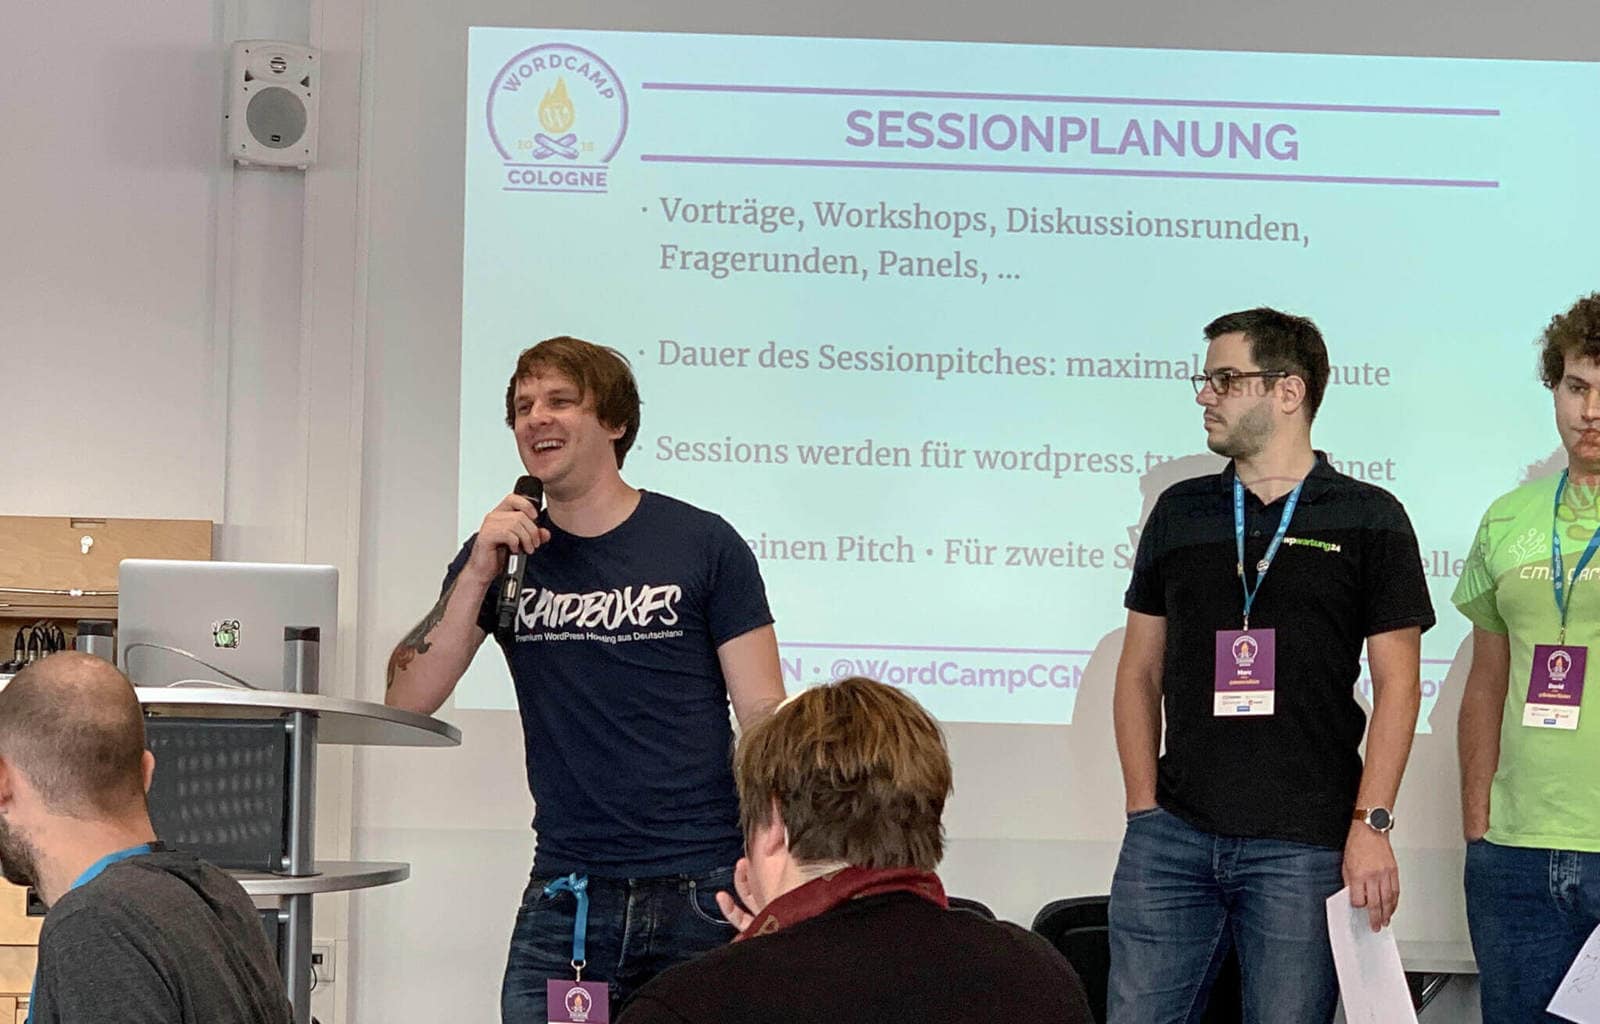 WordCamp Köln: Matthias von Raidboxes beim Session-Pitch